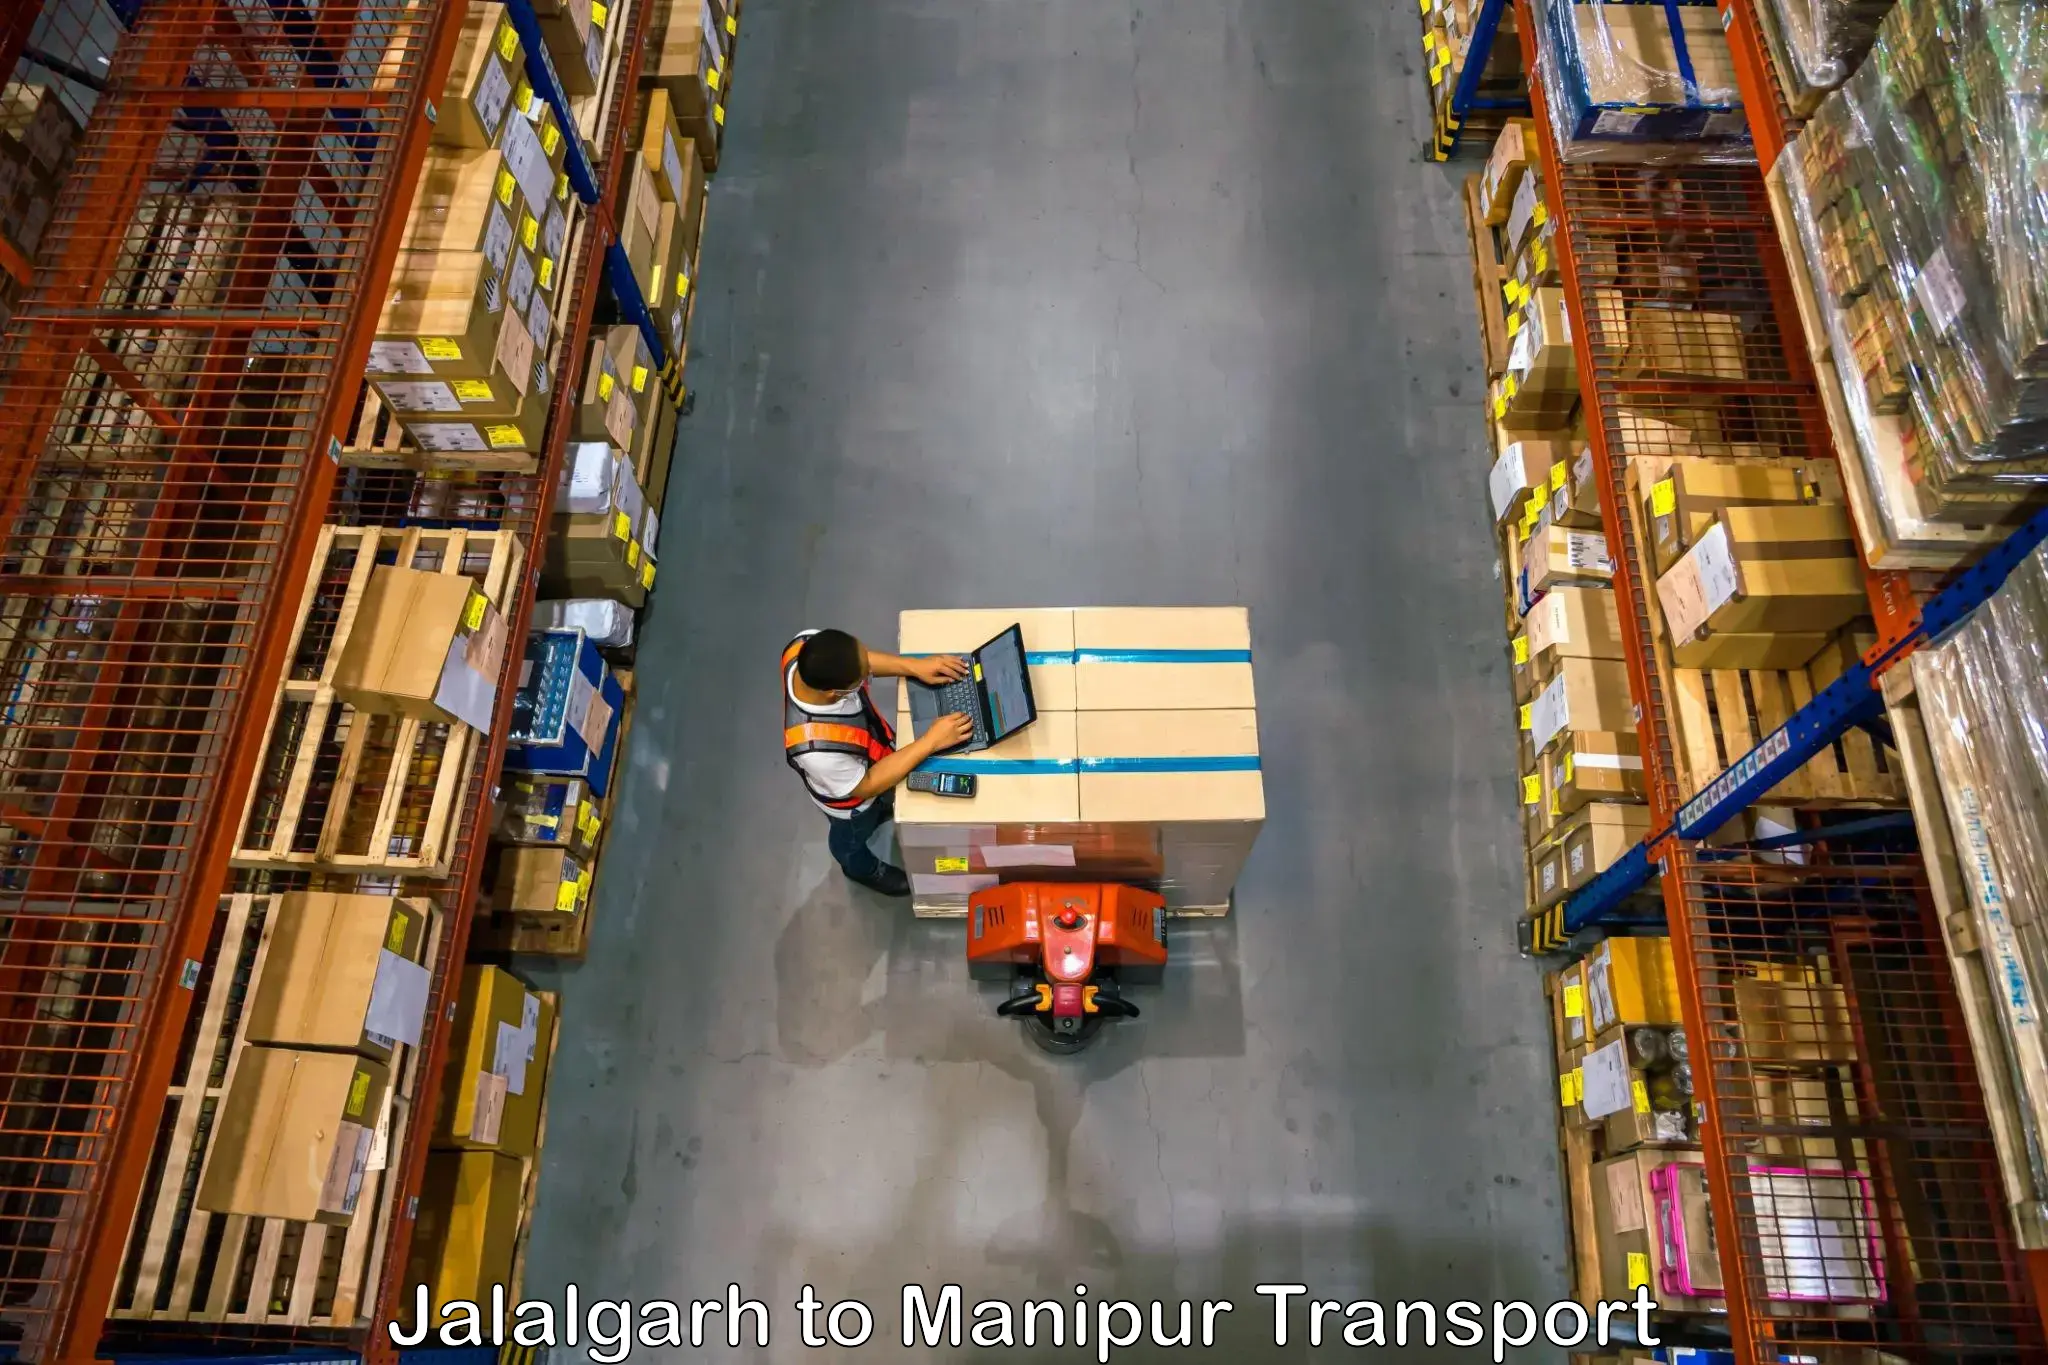 Delivery service Jalalgarh to Senapati